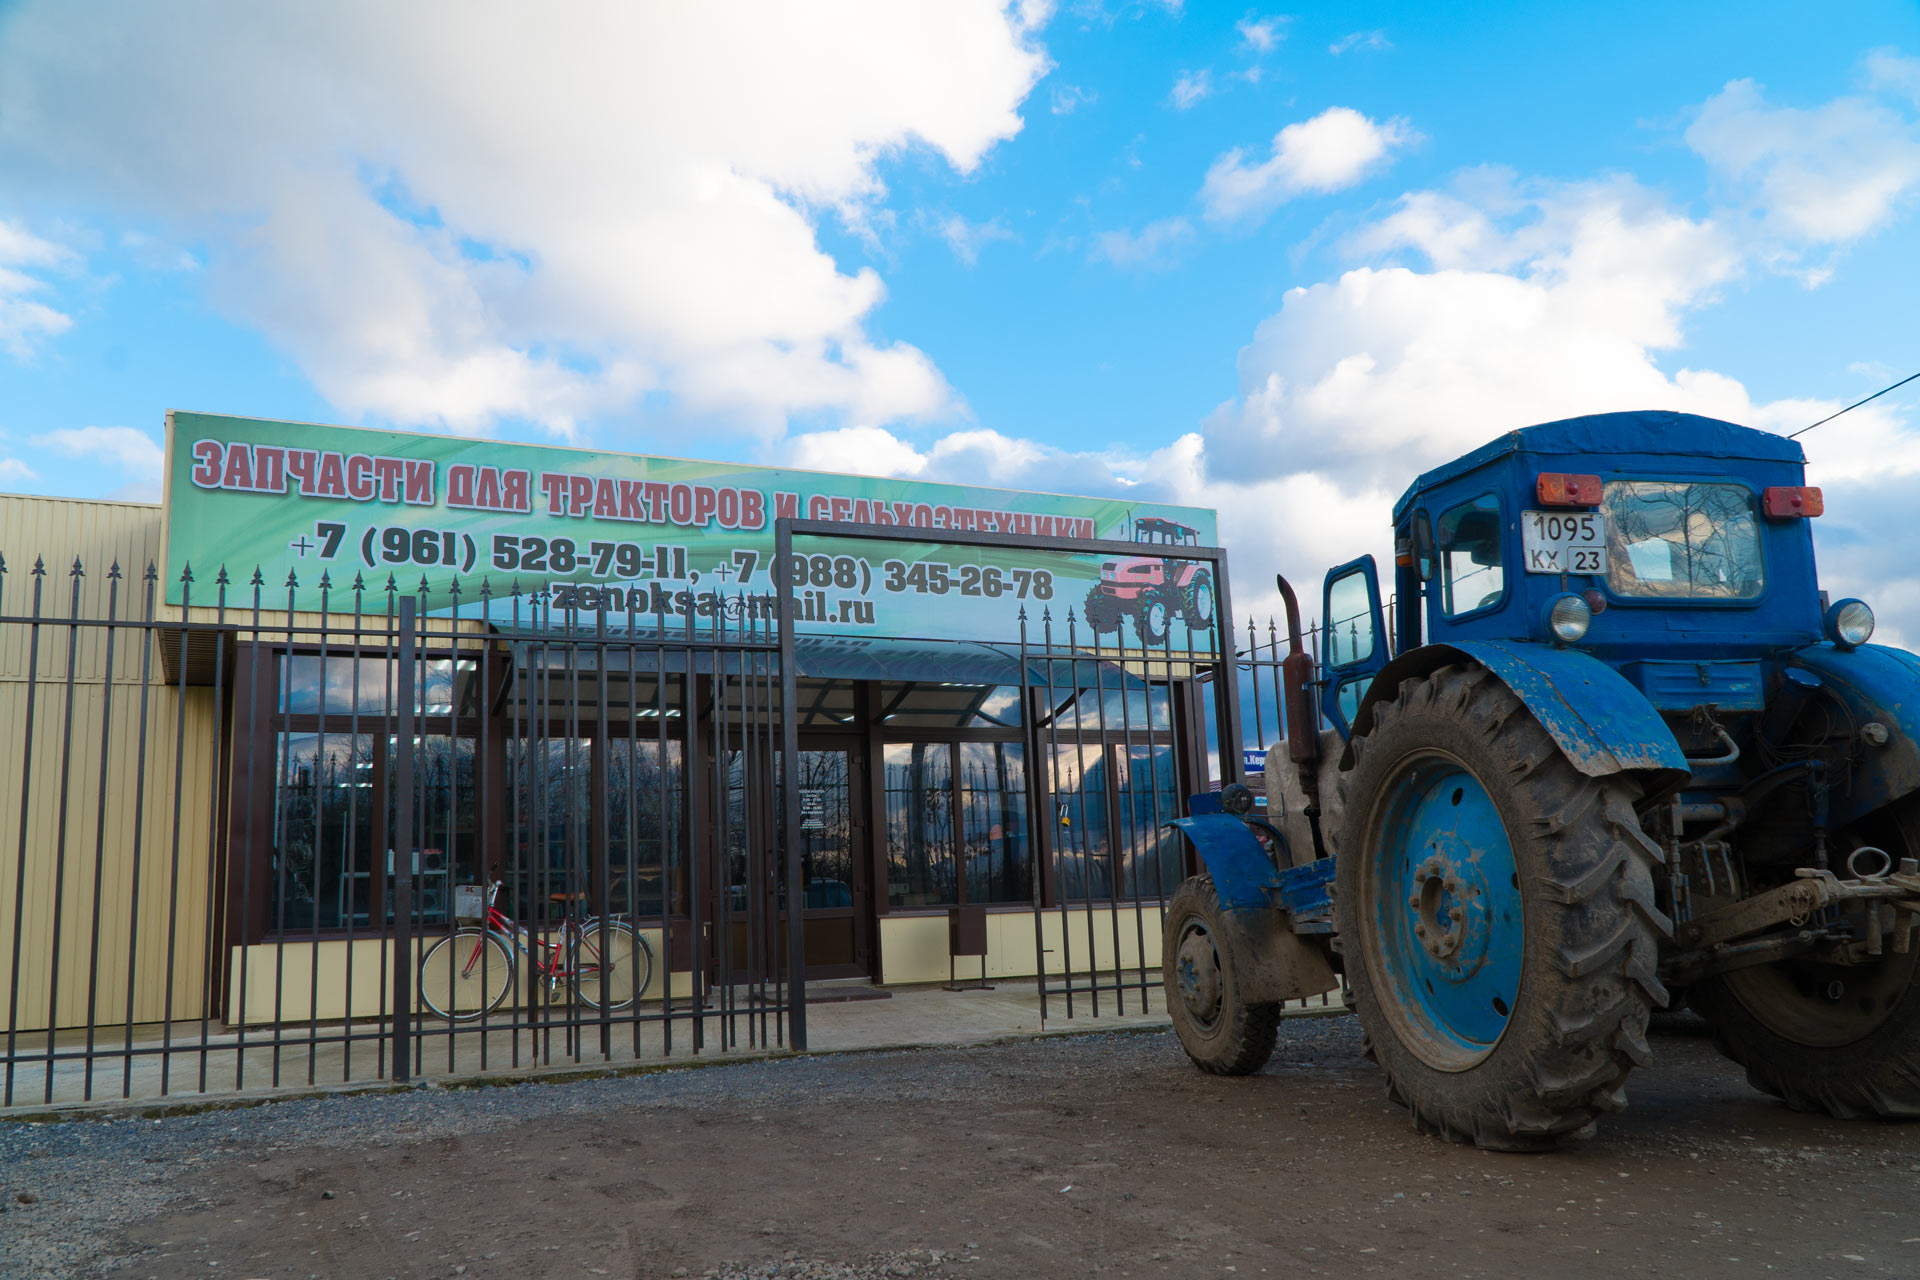 Запчасти в Краснодарском крае для тракторов и сельхозтехники